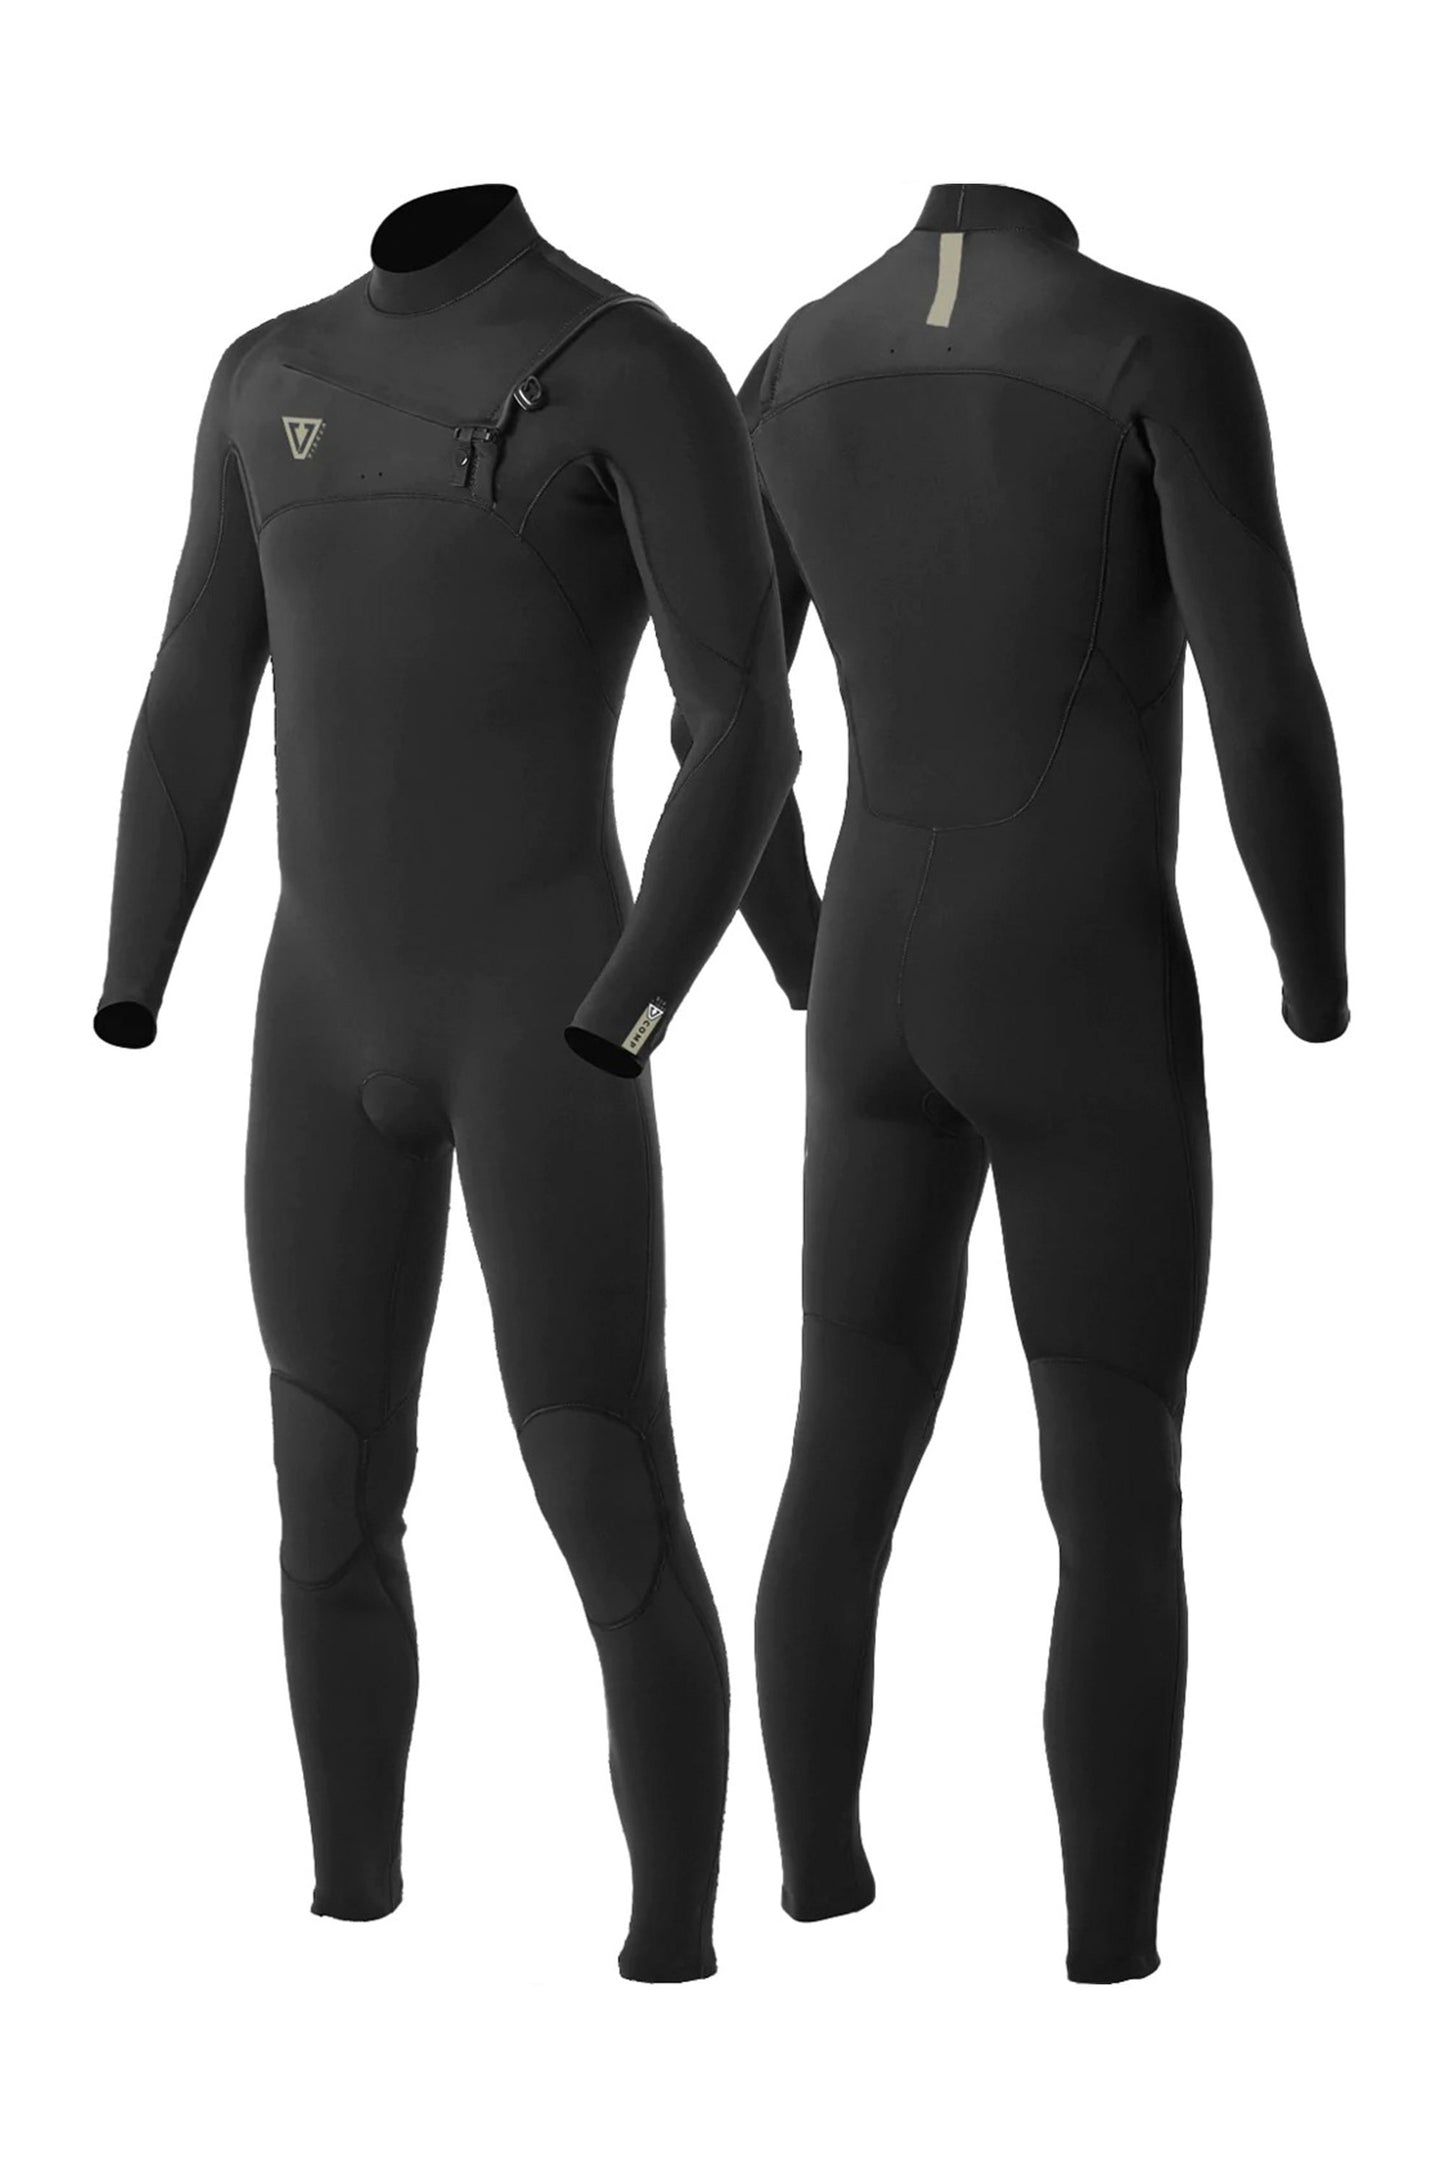    Pukas-Surf-Shop-vissla-wetsuit-Seven-Seas-Comp-4-3-Chset-Zip-bl2